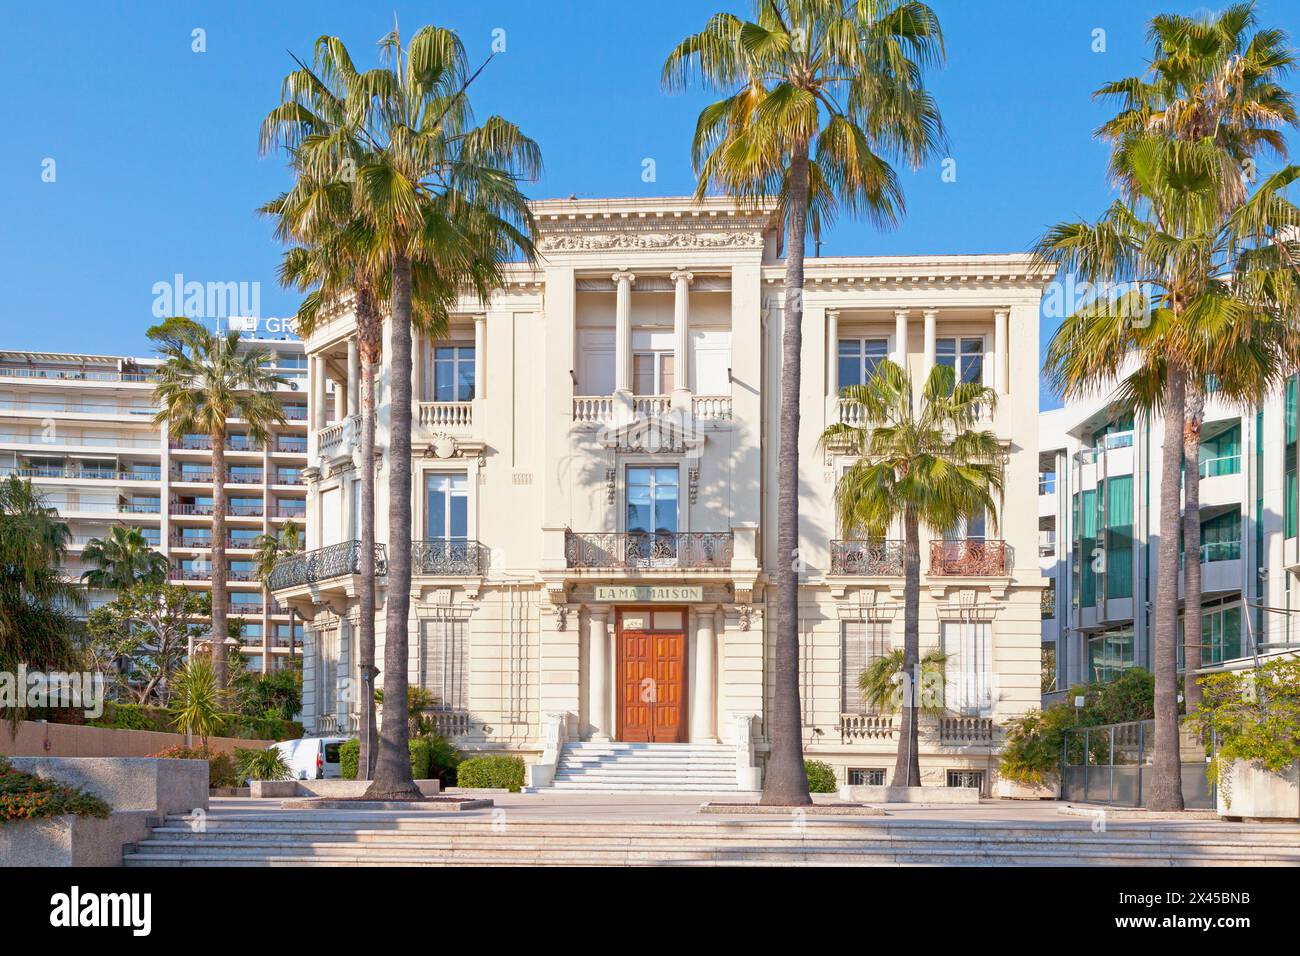 Cannes, Francia - marzo 25 2019: La Malmaison è una galleria d'arte ospitata in un ex hotel che ospita mostre personali di artisti del XX e XXI secolo. Foto Stock